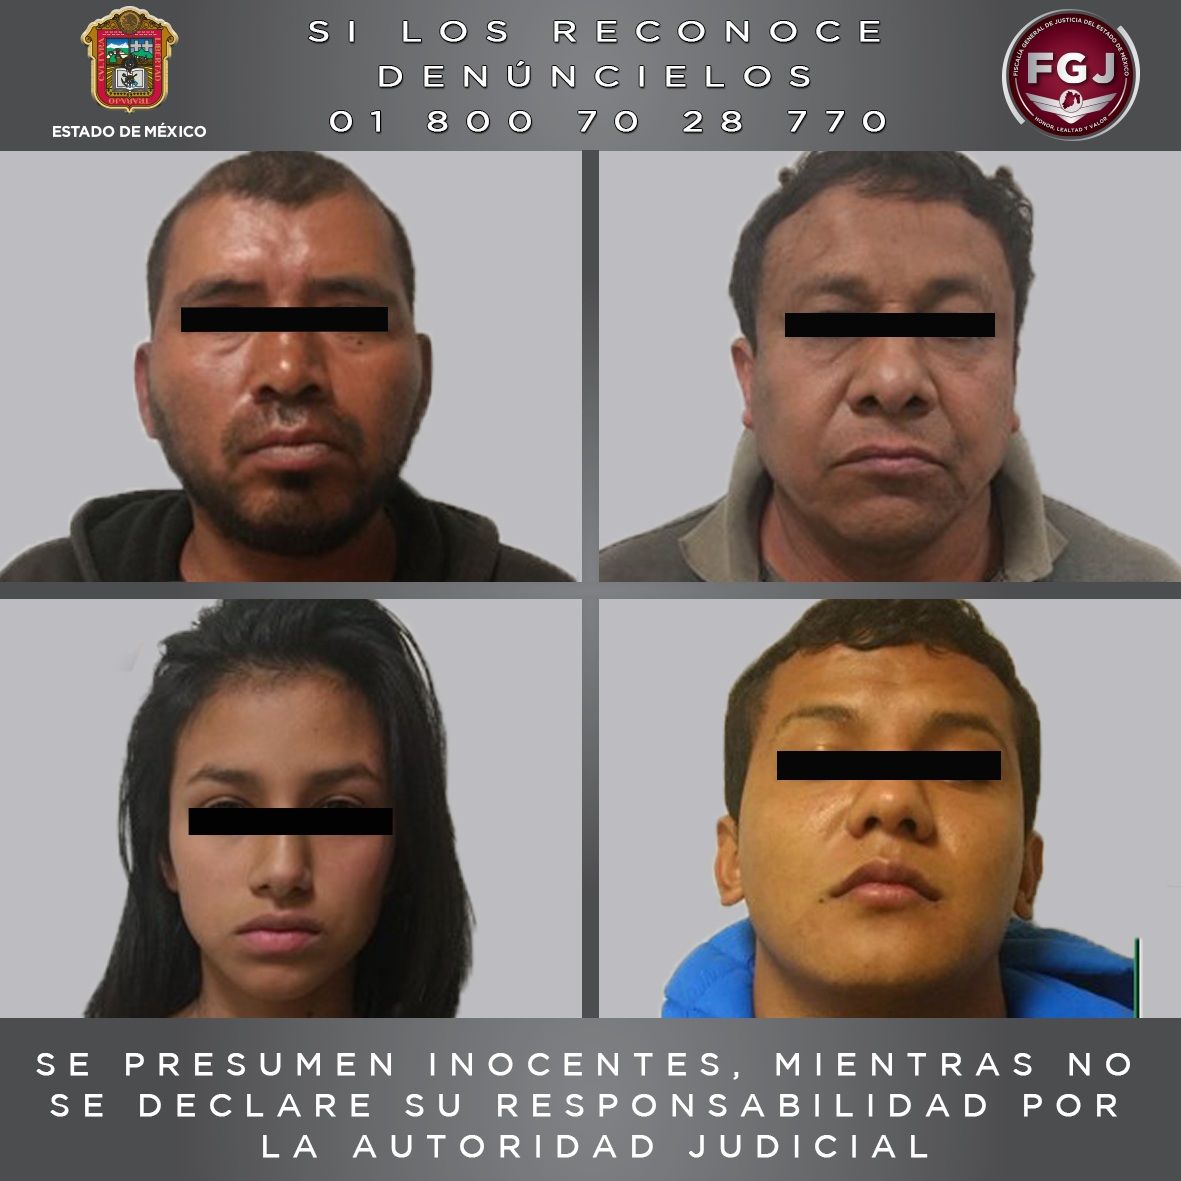 Detienen a cuatro personas investigadas por el secuestro y muerte de un hombre en Texcoco


